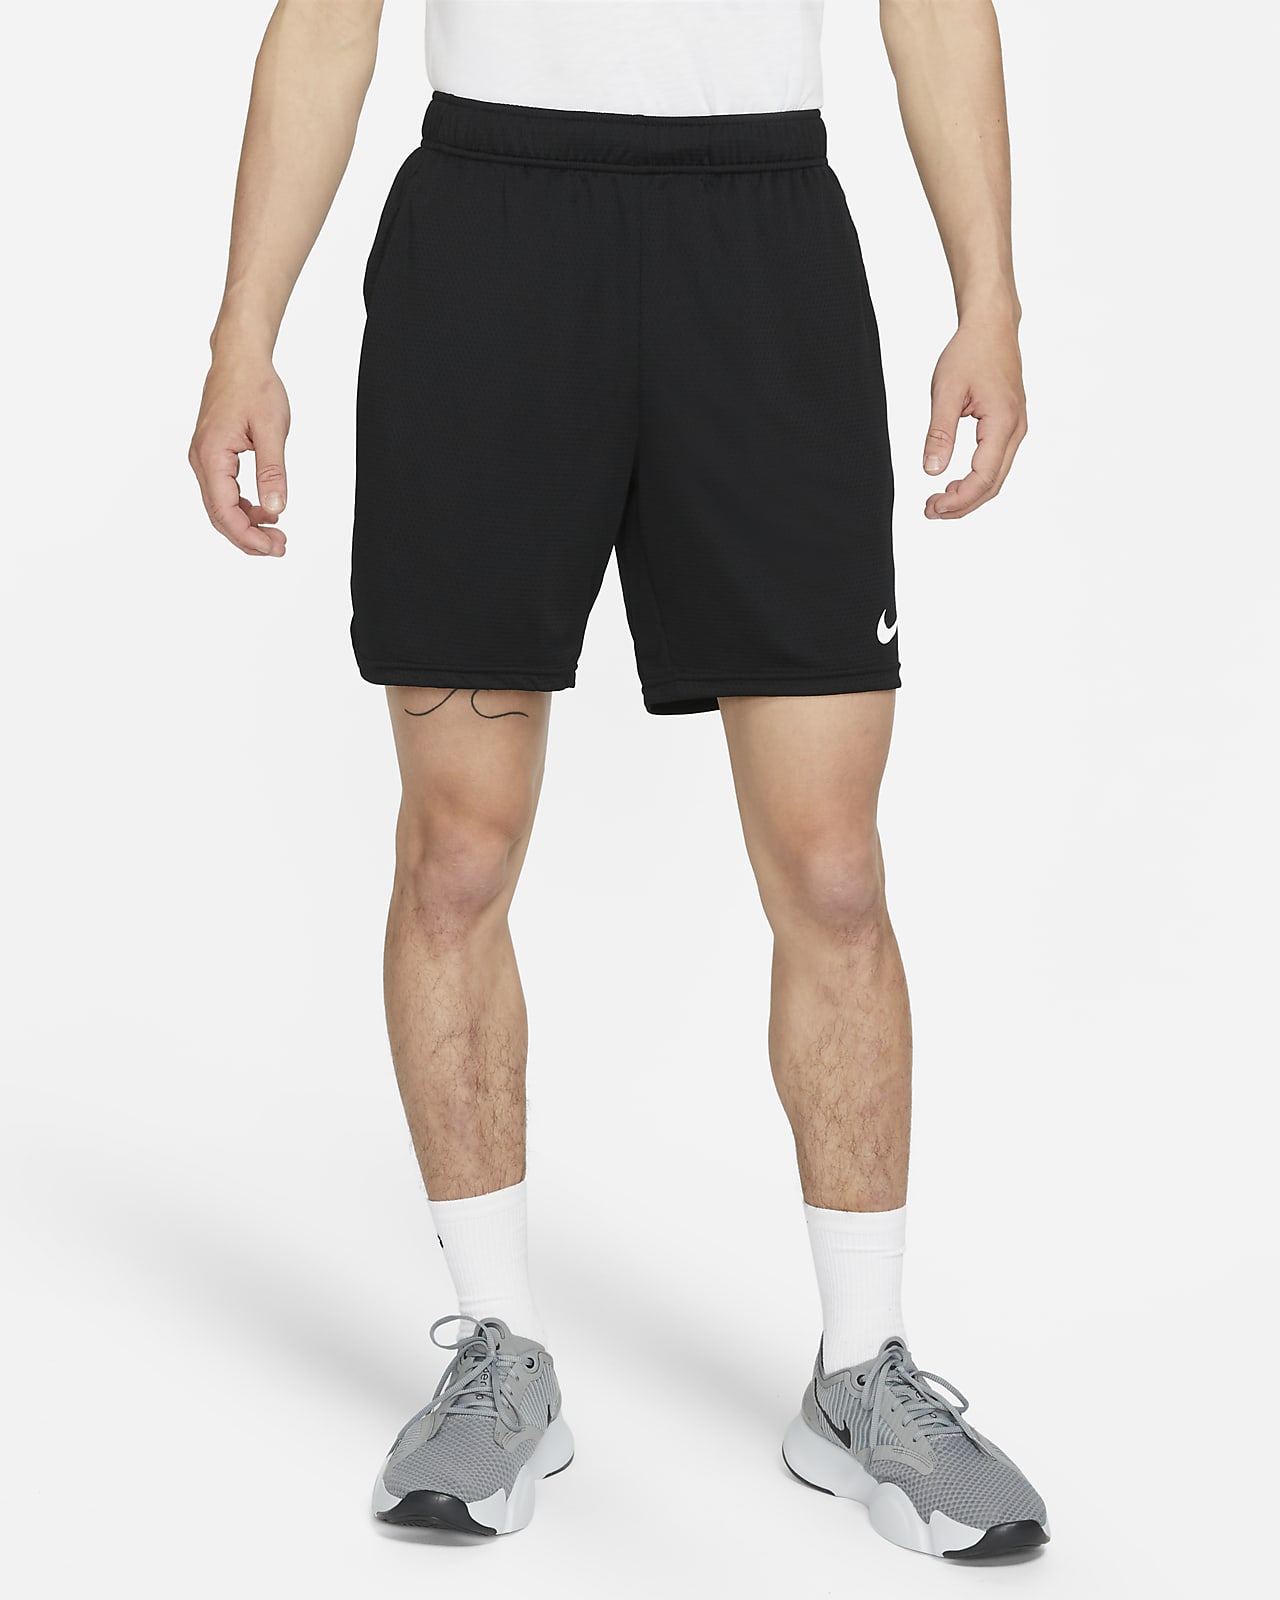 Nike 男款網布訓練短褲